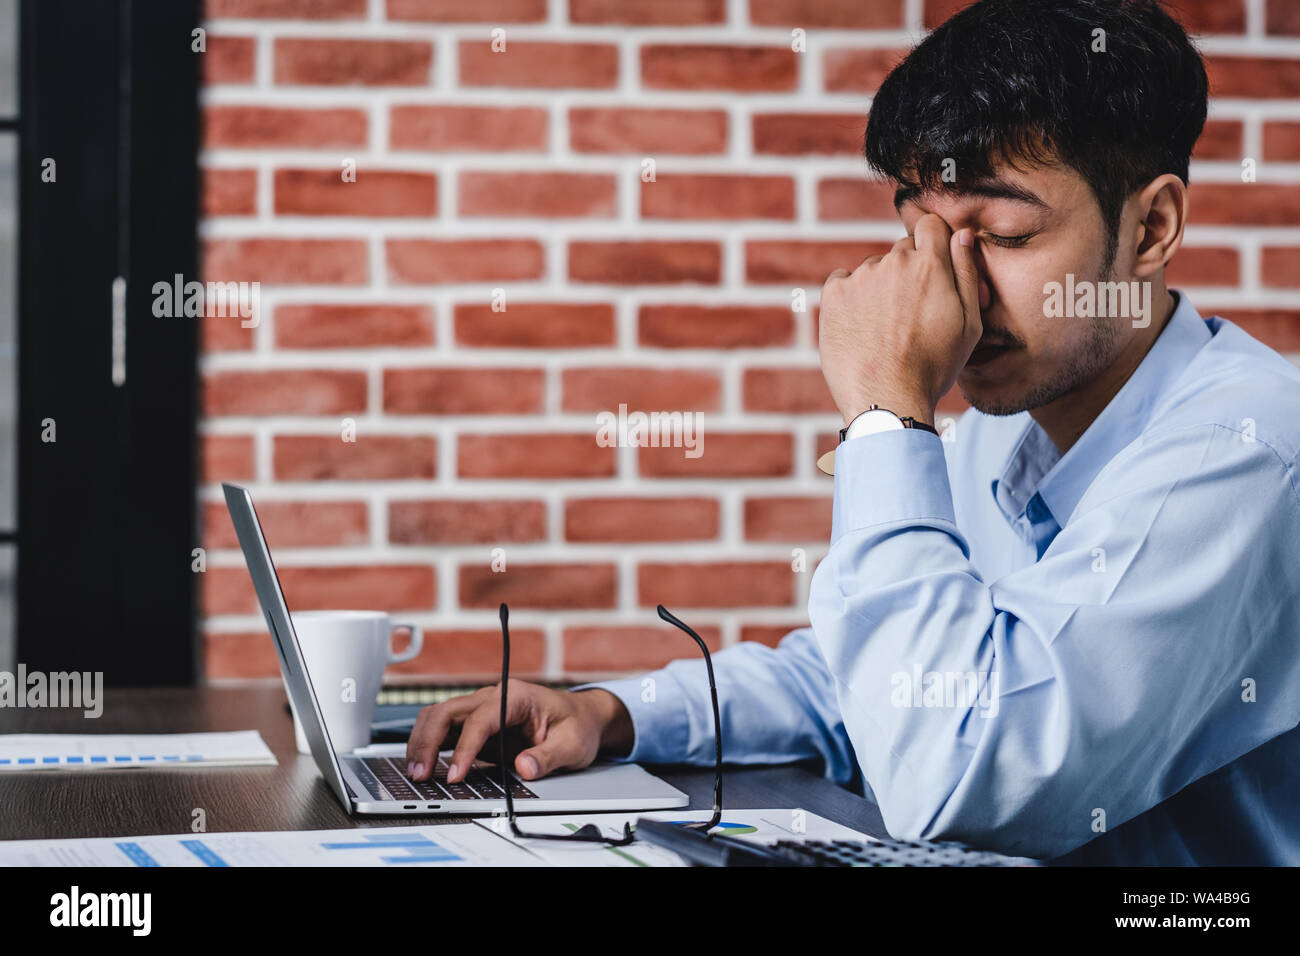 Asiatische Geschäftsmann Stress und Kopfschmerzen beim Arbeiten mit Laptop auf dem Schreibtisch bei der moderne Büro. Business fail Konzept. Mann gefangen Auge wenn überarbeitet. Stockfoto